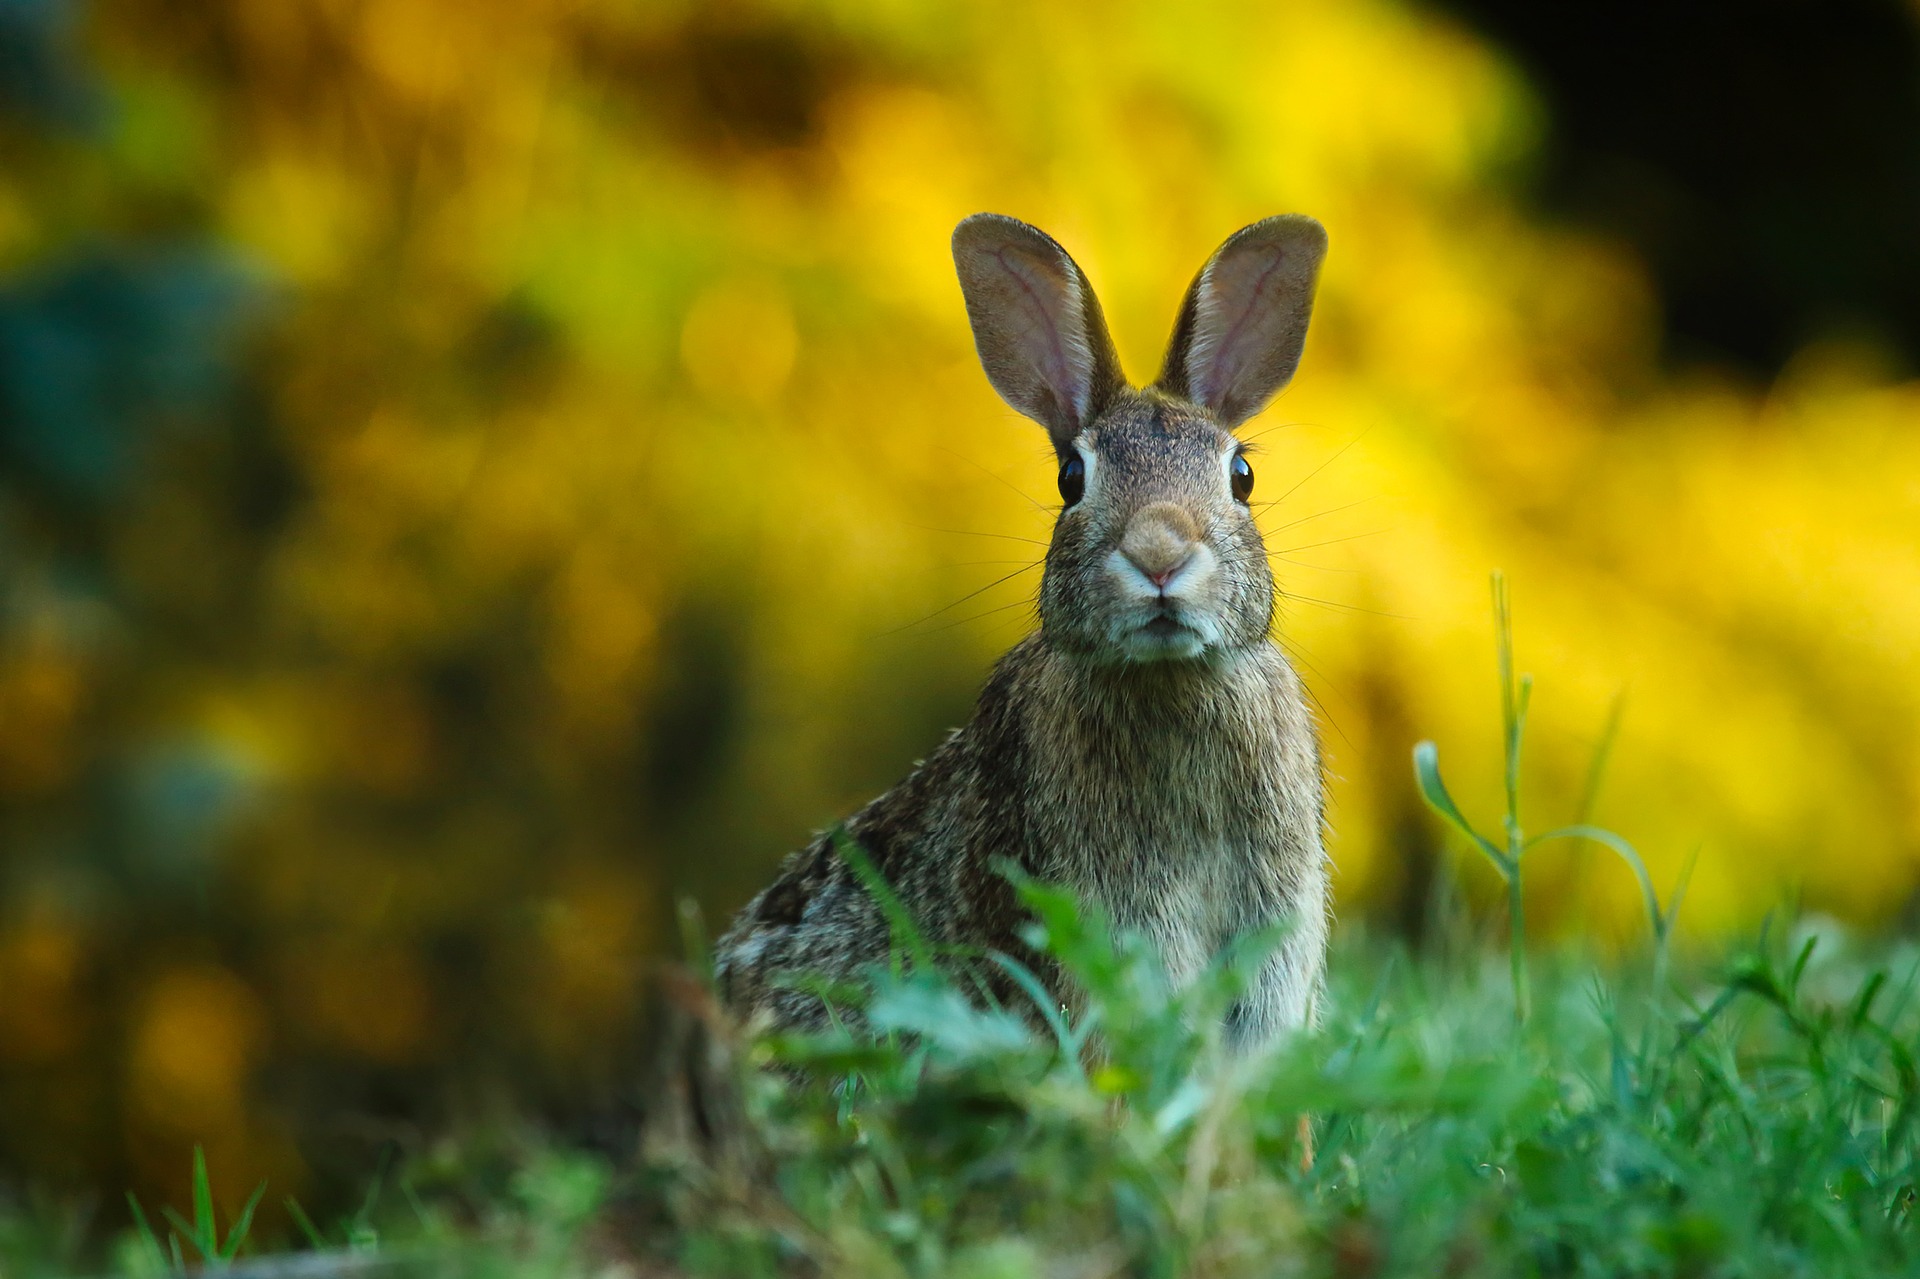 Rabbit sitting alert in a field.